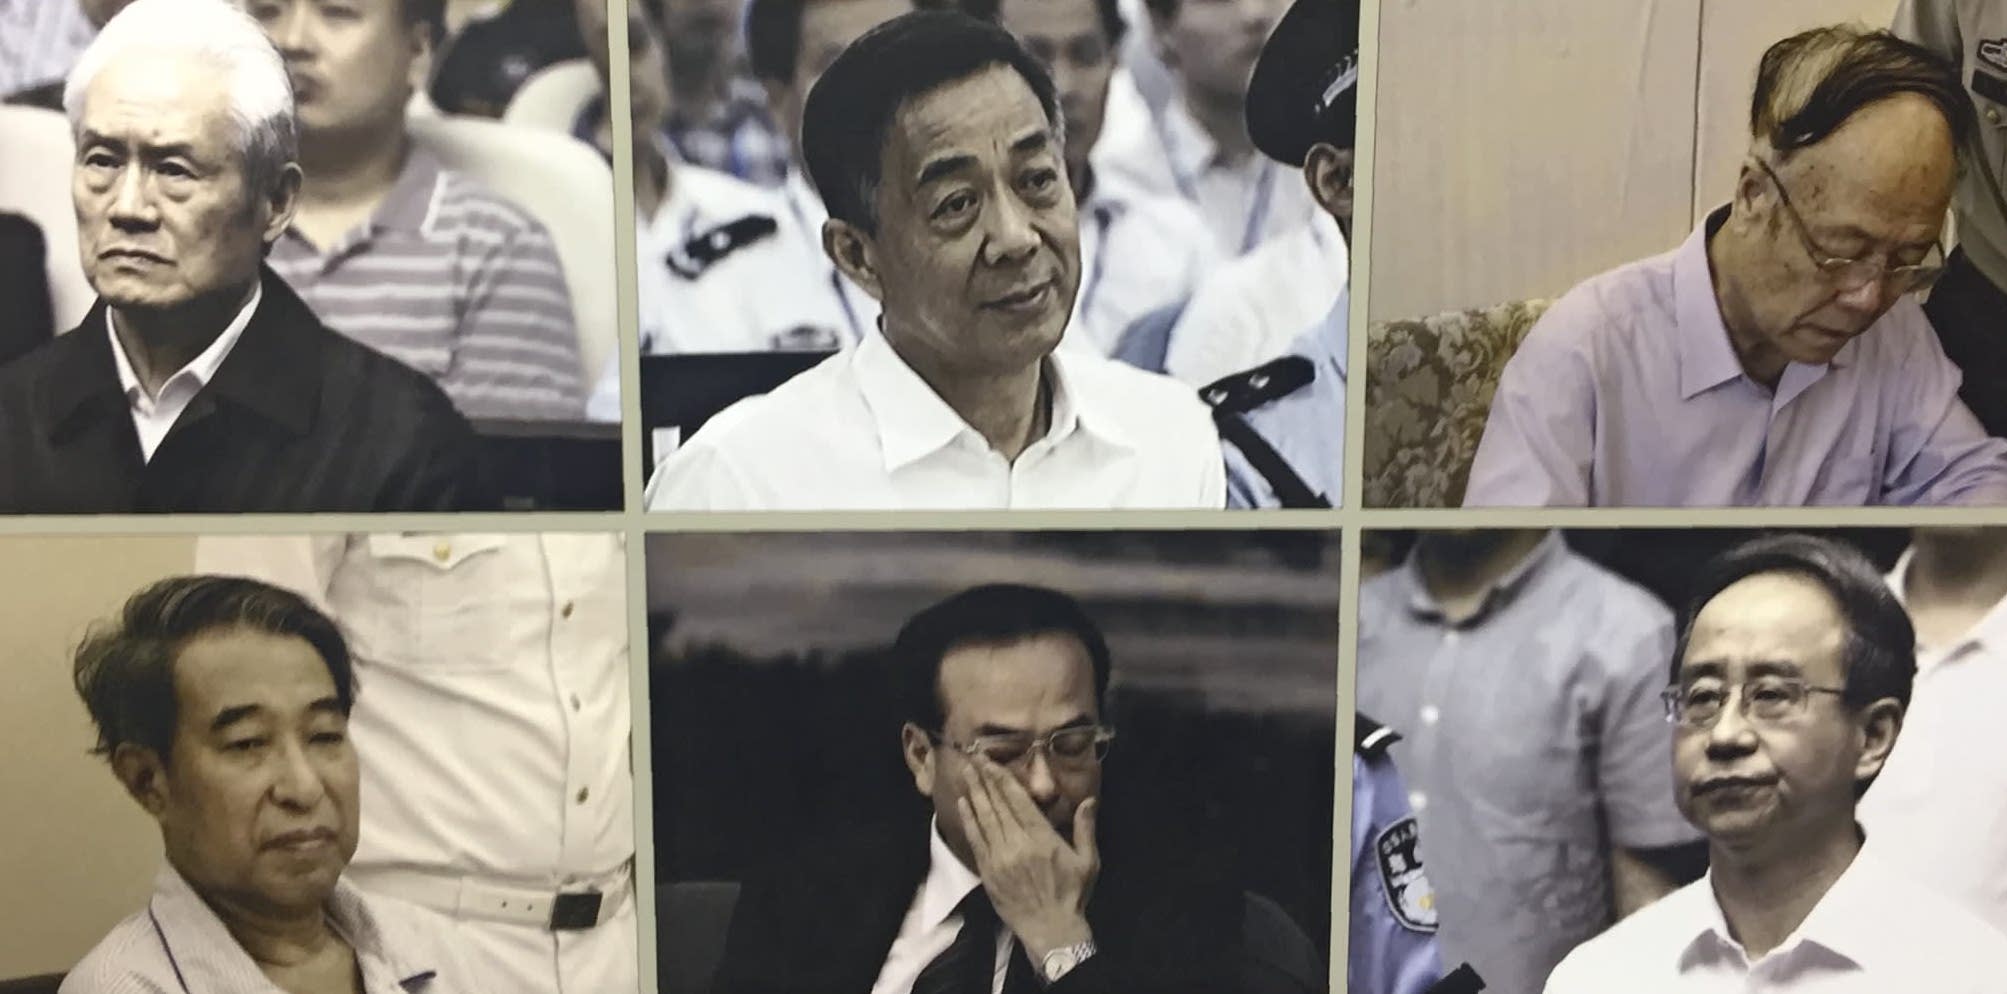 La "Nouvelle bande des quatre" et leurs alliés constituent, selon le Parti, le groupe présumé qui a tenté de prendre le pouvoir à la place de Xi Jinping en 2012. Les "Quatre" : Zhou Yongkang (en h. à g.), Bo Xilai (en h. au centre), Xu Caihou (en bas à g.) et Ling Jihua (en bas à d.). Deux de leurs "alliés" déchus dans leur sillage : Sun Zhengcai (en bas au centre) et Guo Boxiong (en h. à d.). (Source : Asia Nikkei)